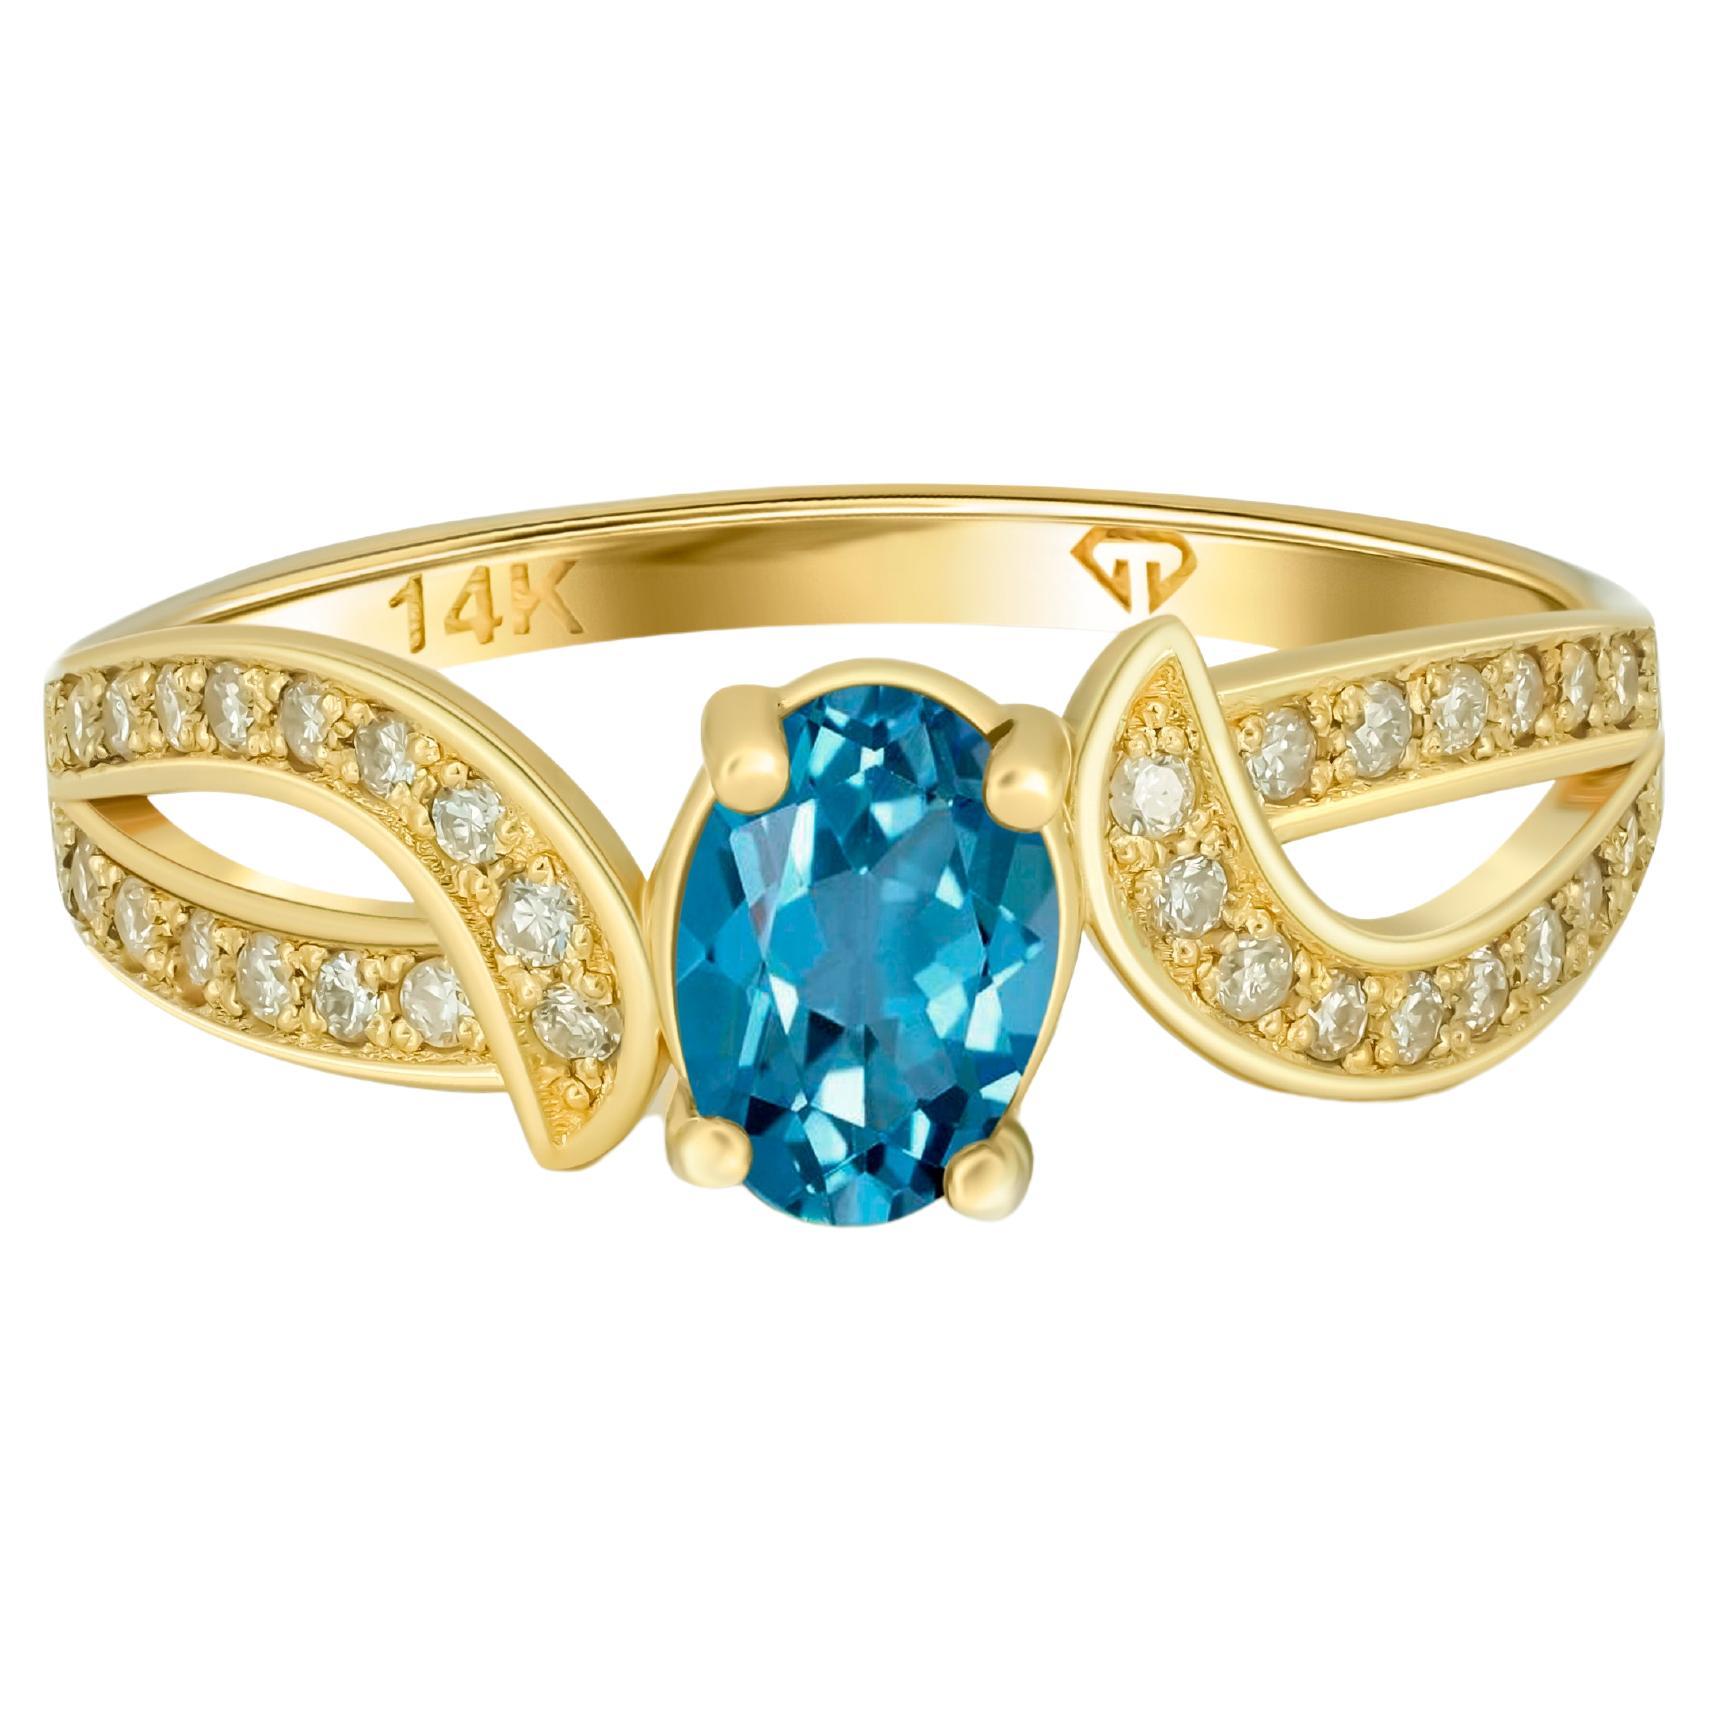 For Sale:  Genuine Topaz 14k Gold Ring, Topaz Engagement Ring